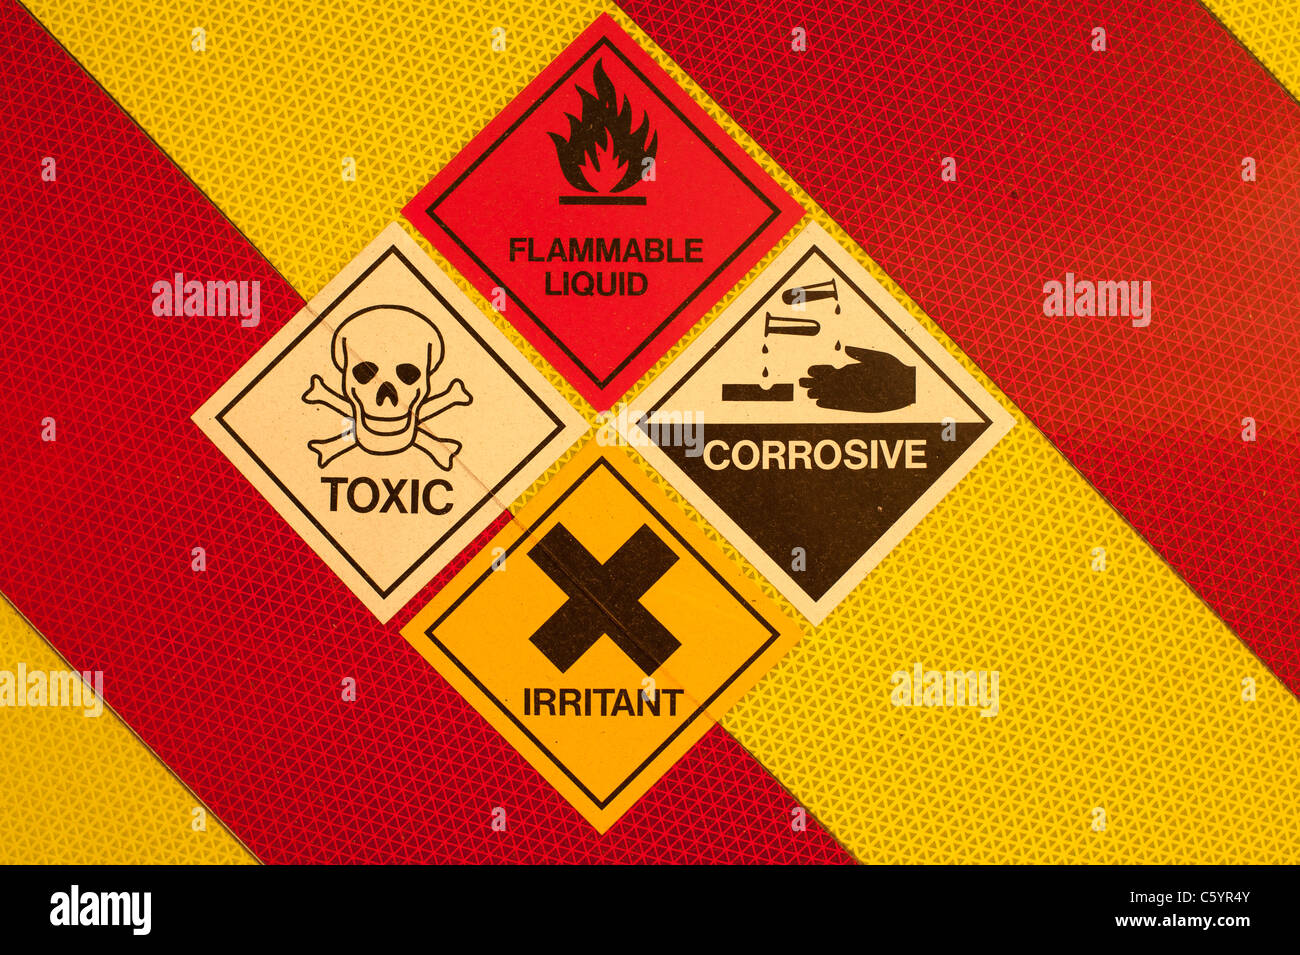 Un conjunto de peligros tóxicos líquidos inflamables, corrosivos y líquidos químicos irritantes símbolos de advertencia en rojo y amarillo UK Foto de stock